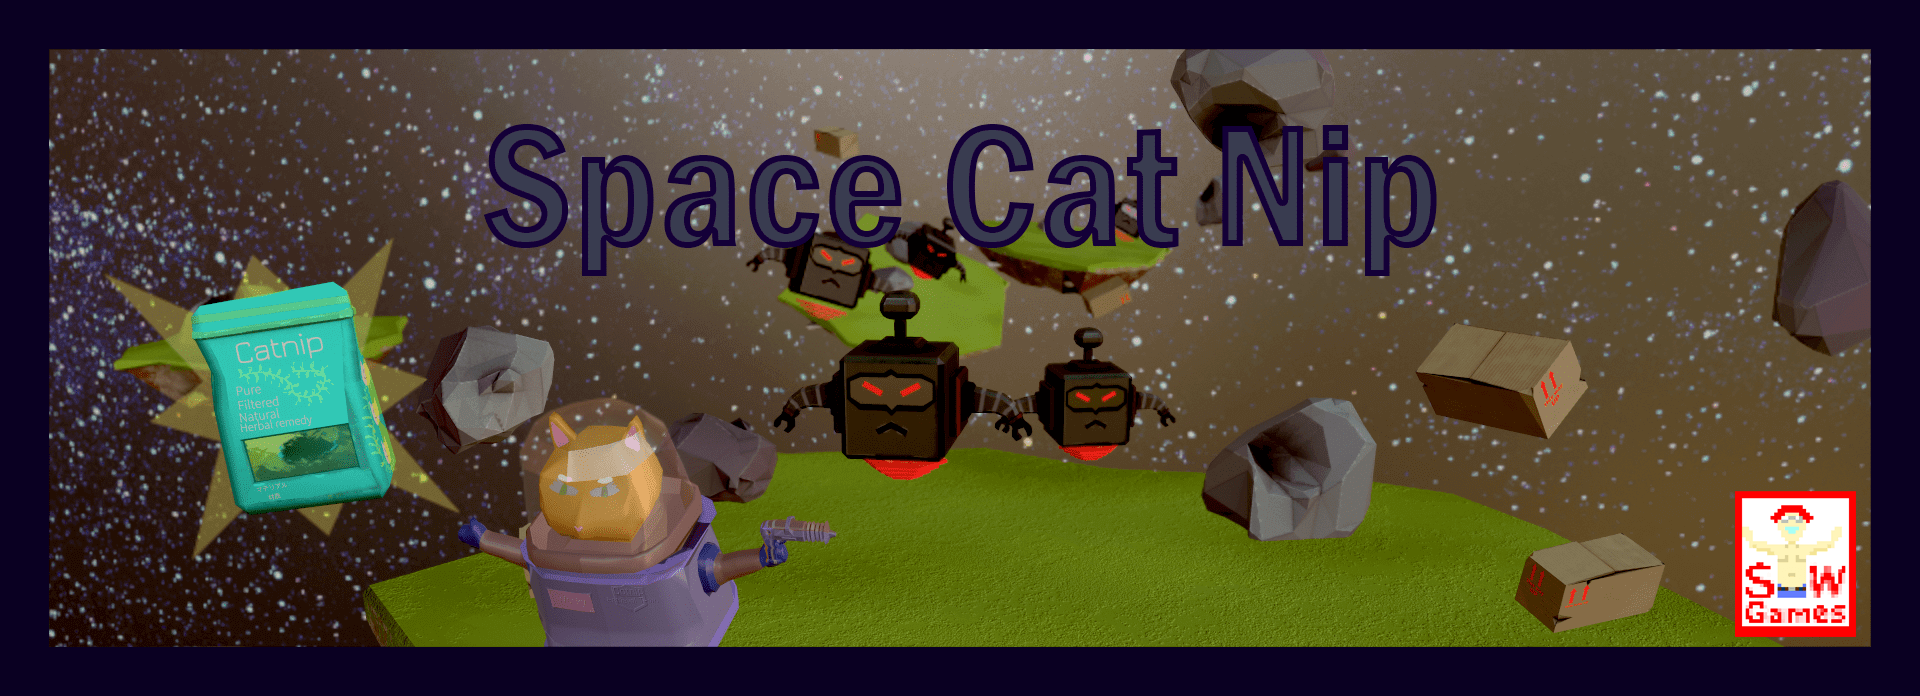 Space catnip cover